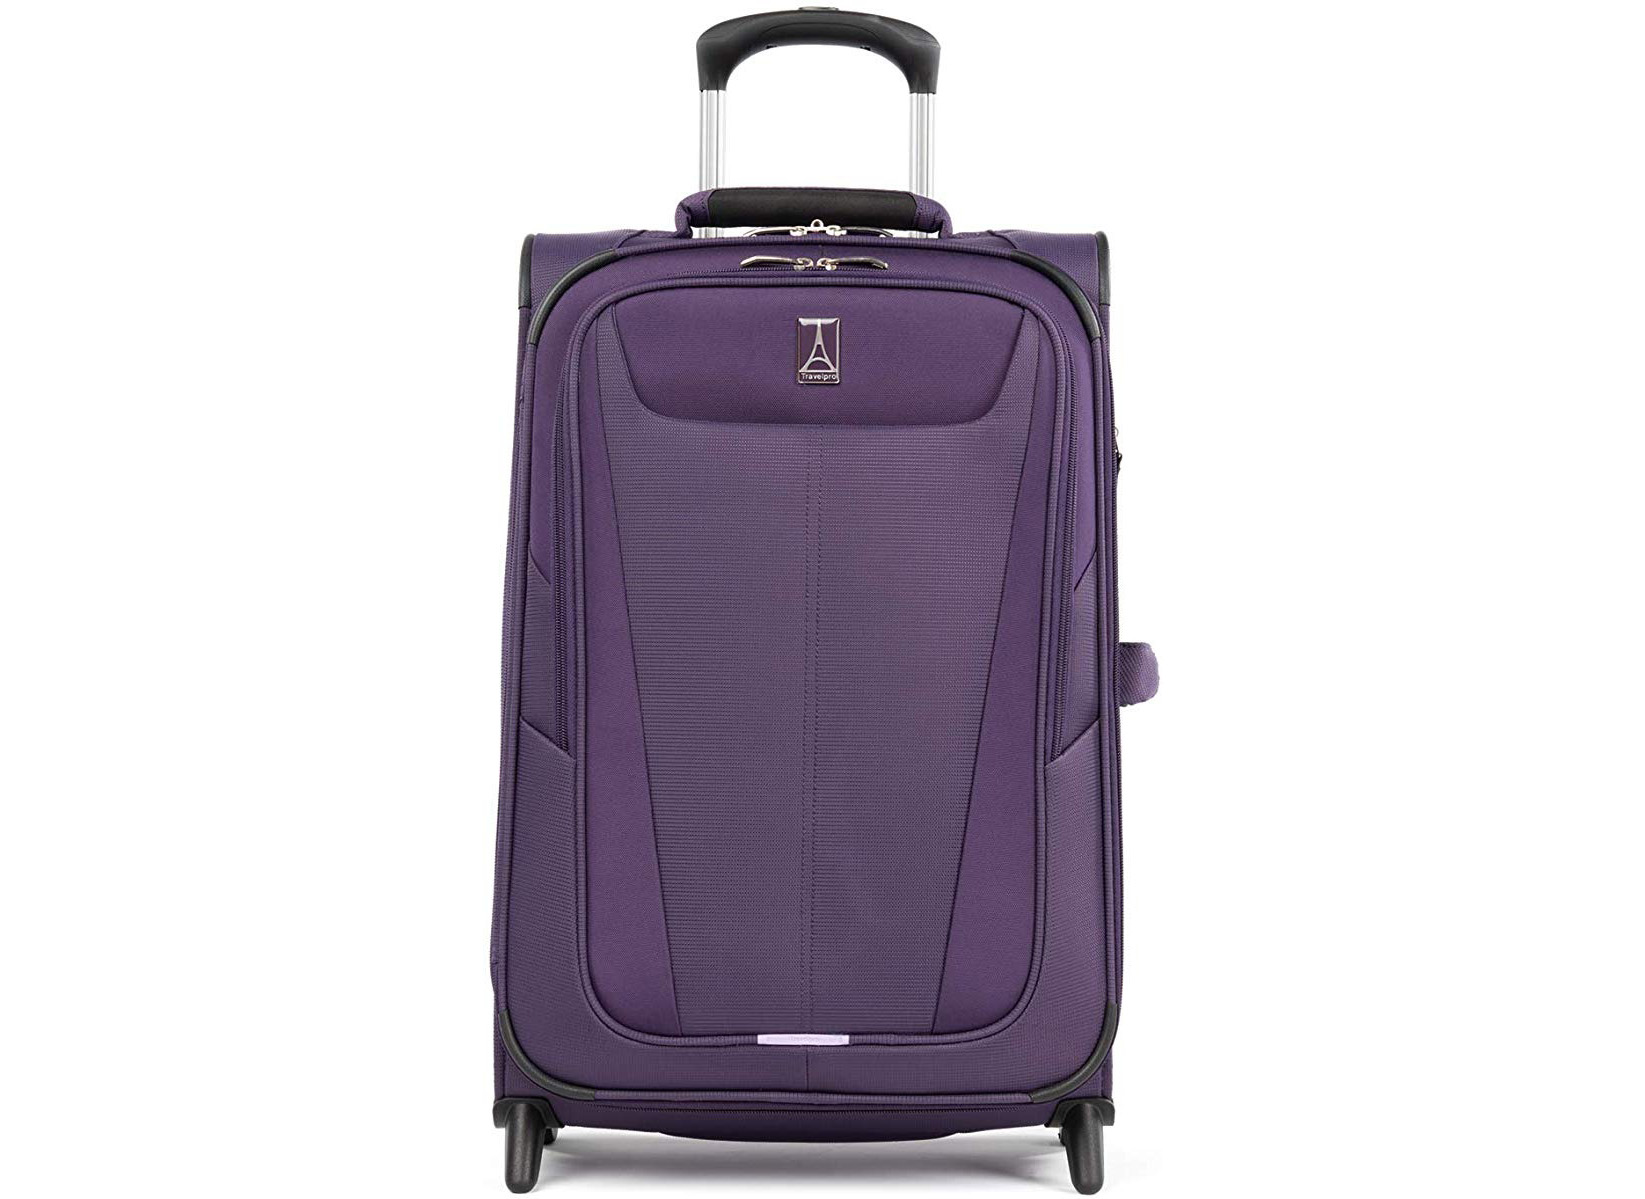 El mejor equipaje liviano: 10 bolsas de mano por debajo de 6 libras - 29